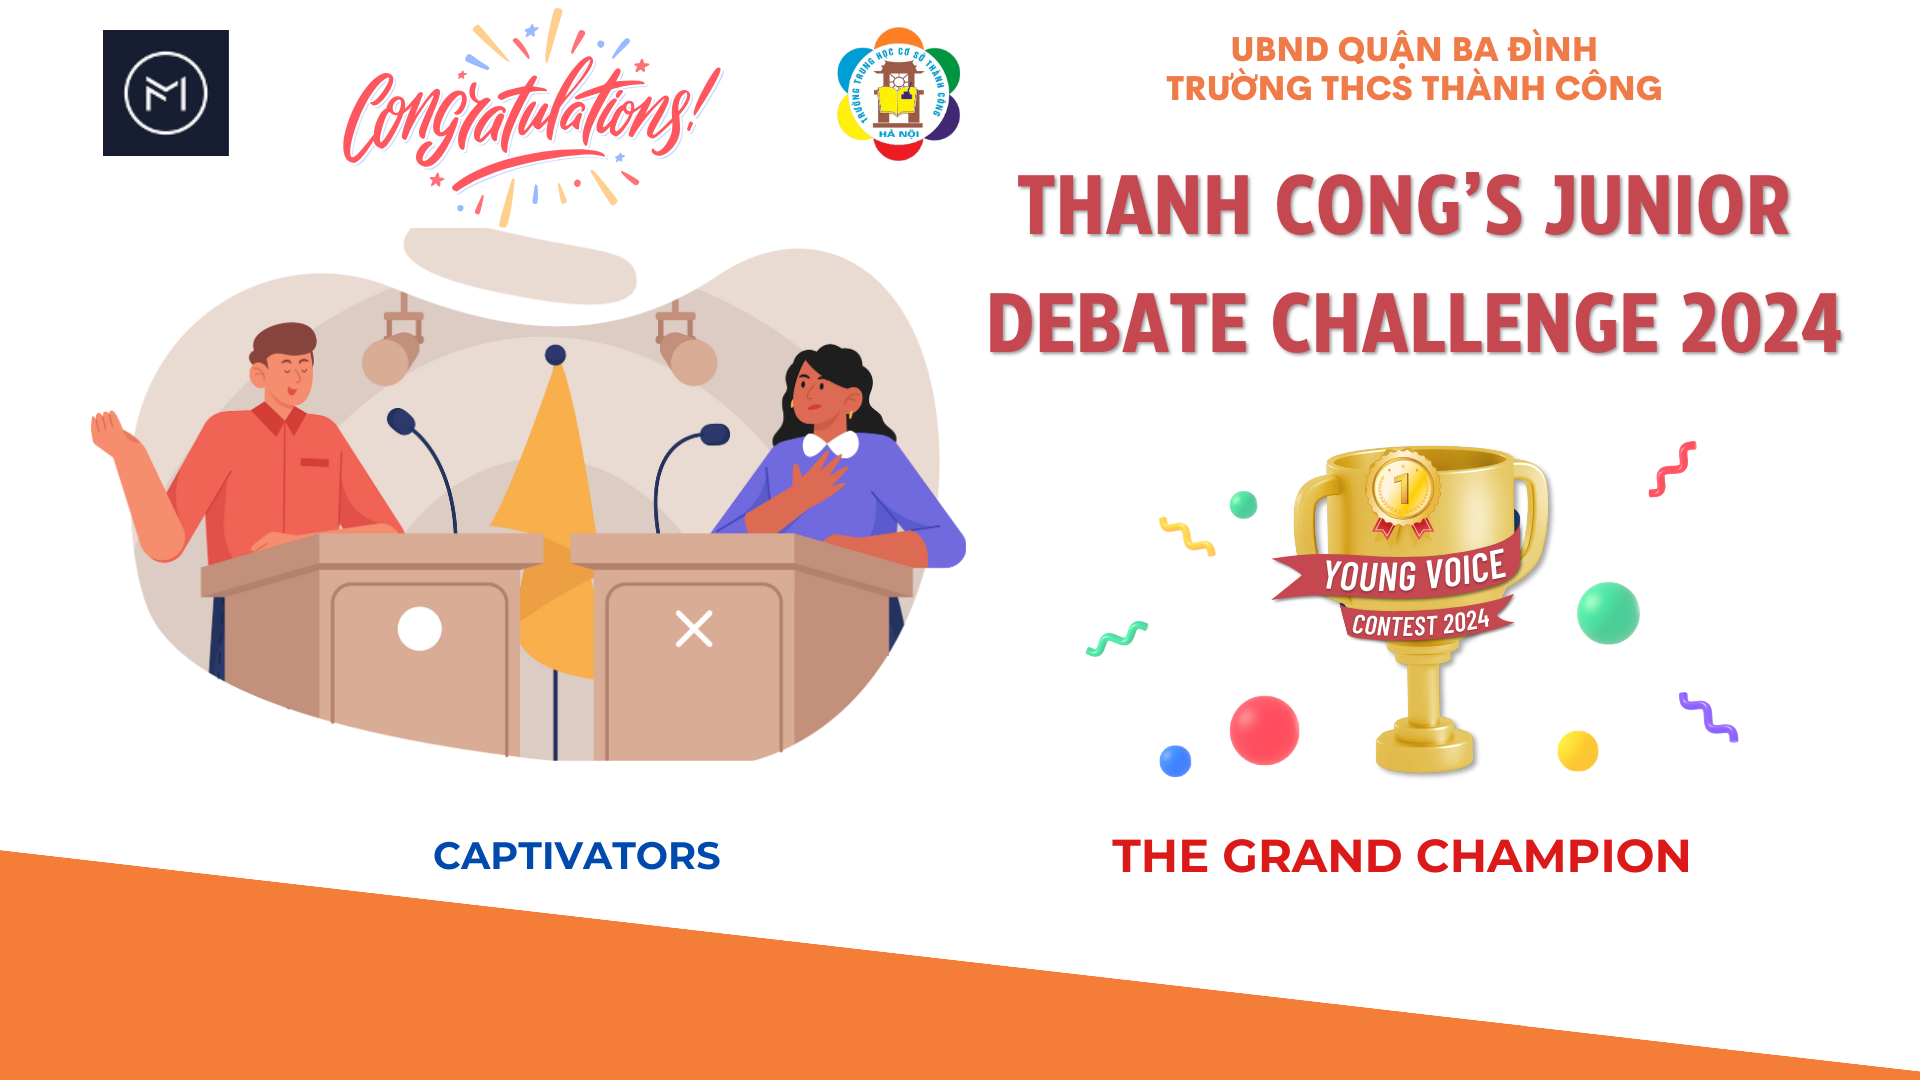 Nhà vô địch Thanh Cong’s Junior Debate Challenge 2024 - Young Voice contest gọi tên Captivators